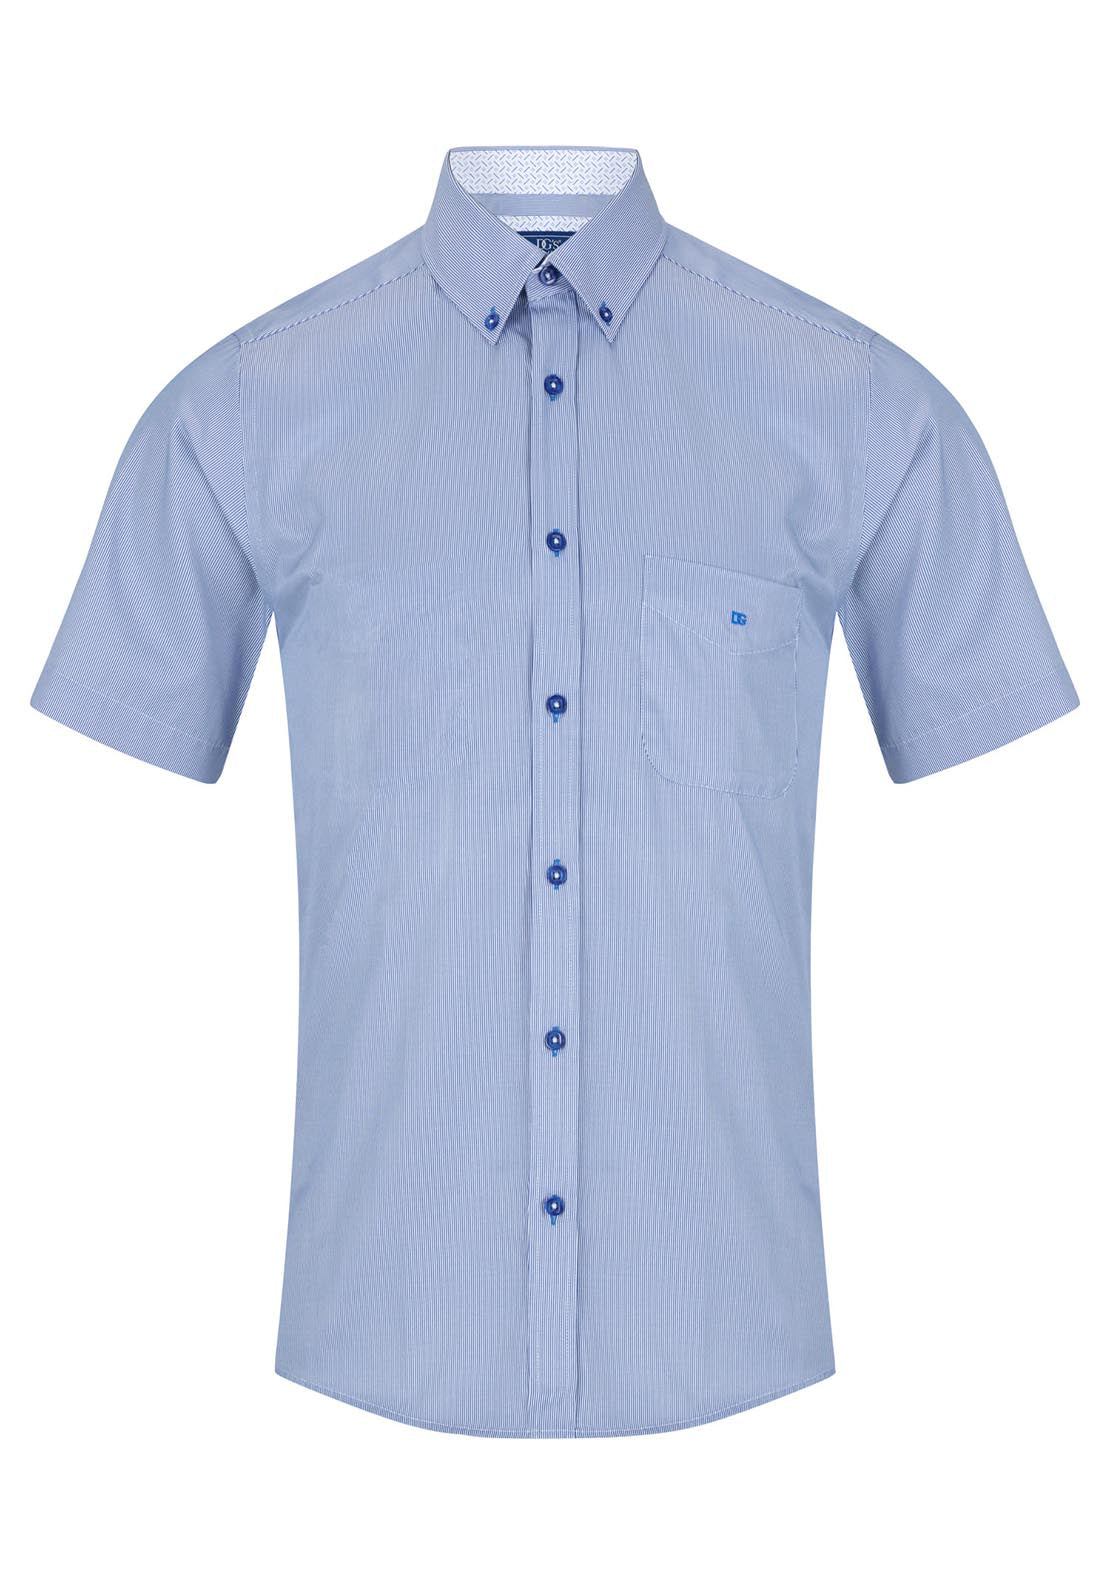 Drifter Short Sleeve Stripe Shirt 1 Shaws Department Stores